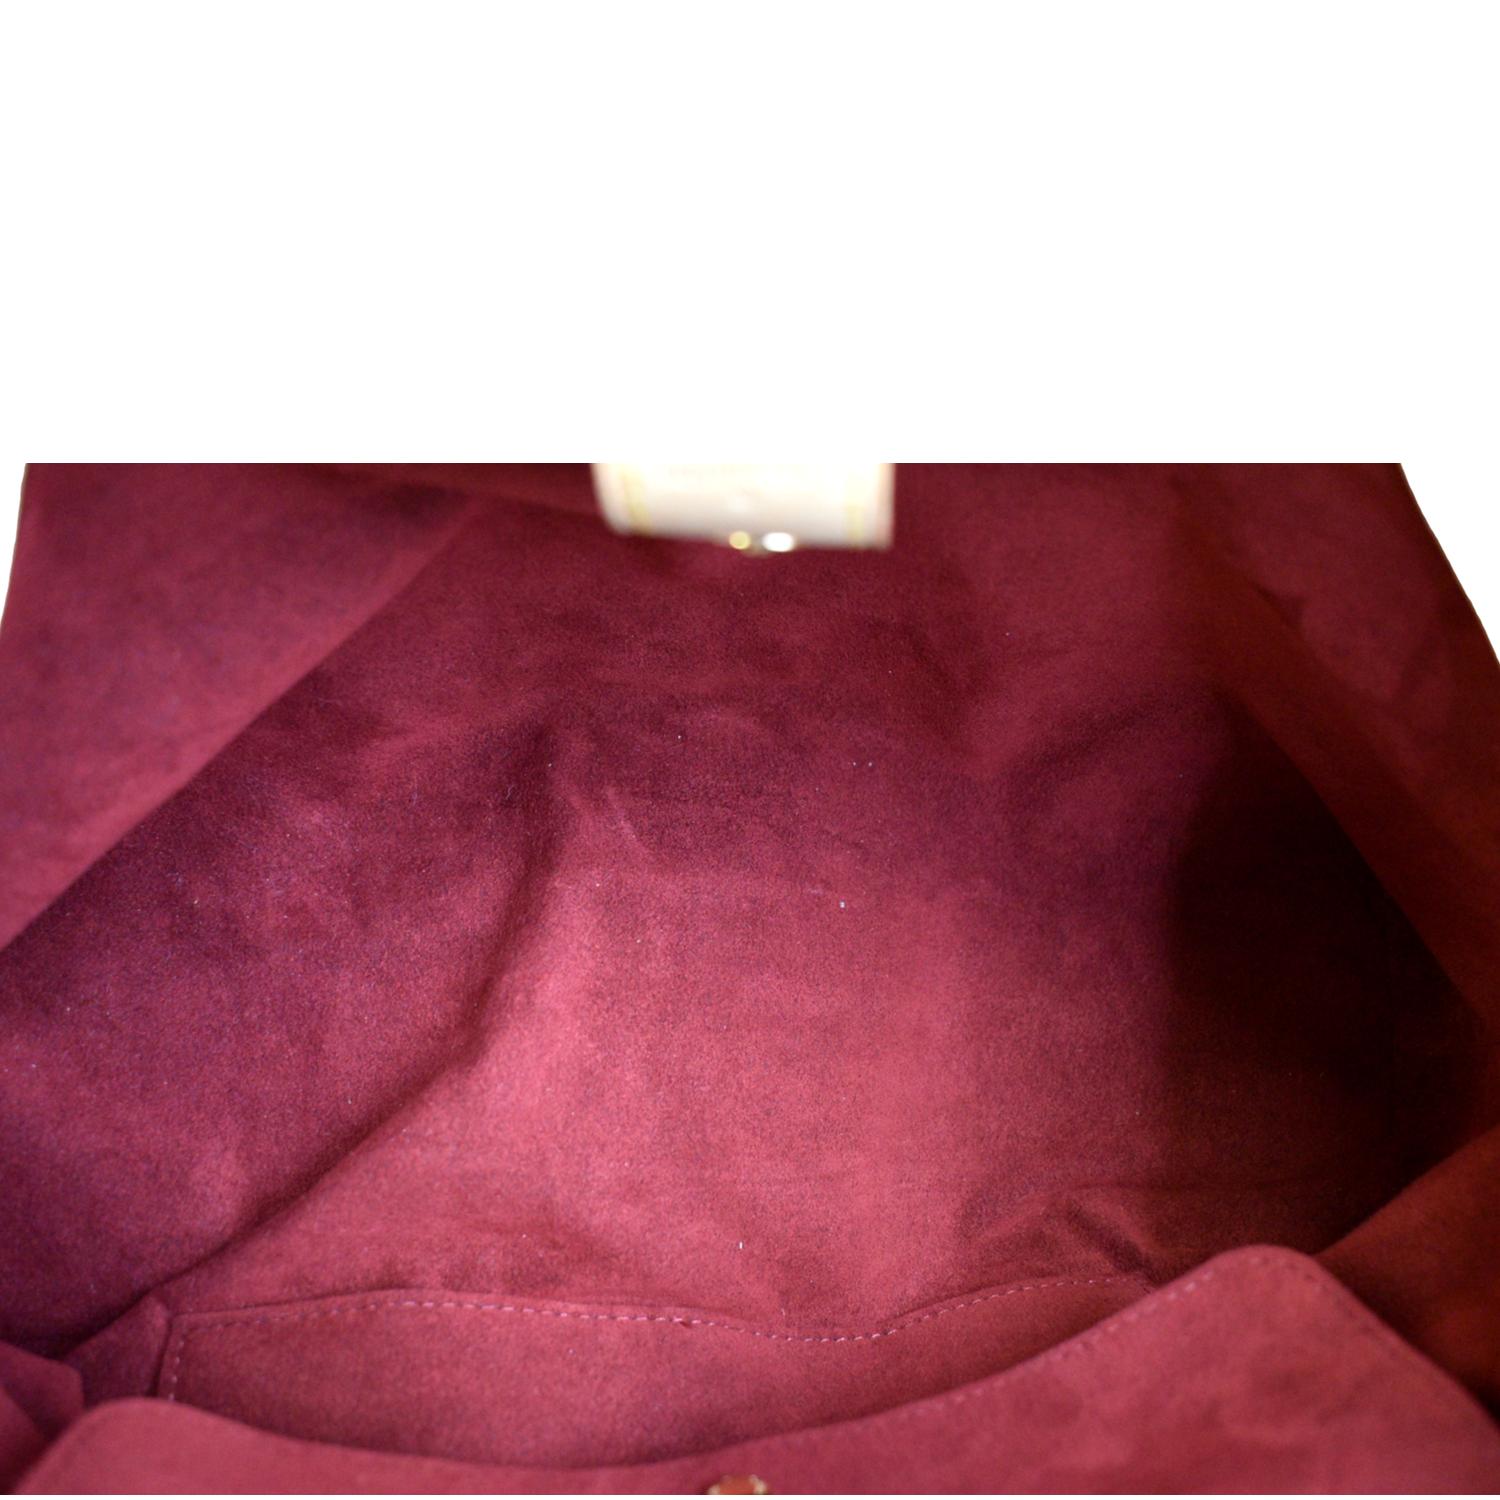 LOUIS VUITTON Monogram Multicolor Judy GM Shoulder Bag White M40253 auth  43449 ref.944783 - Joli Closet